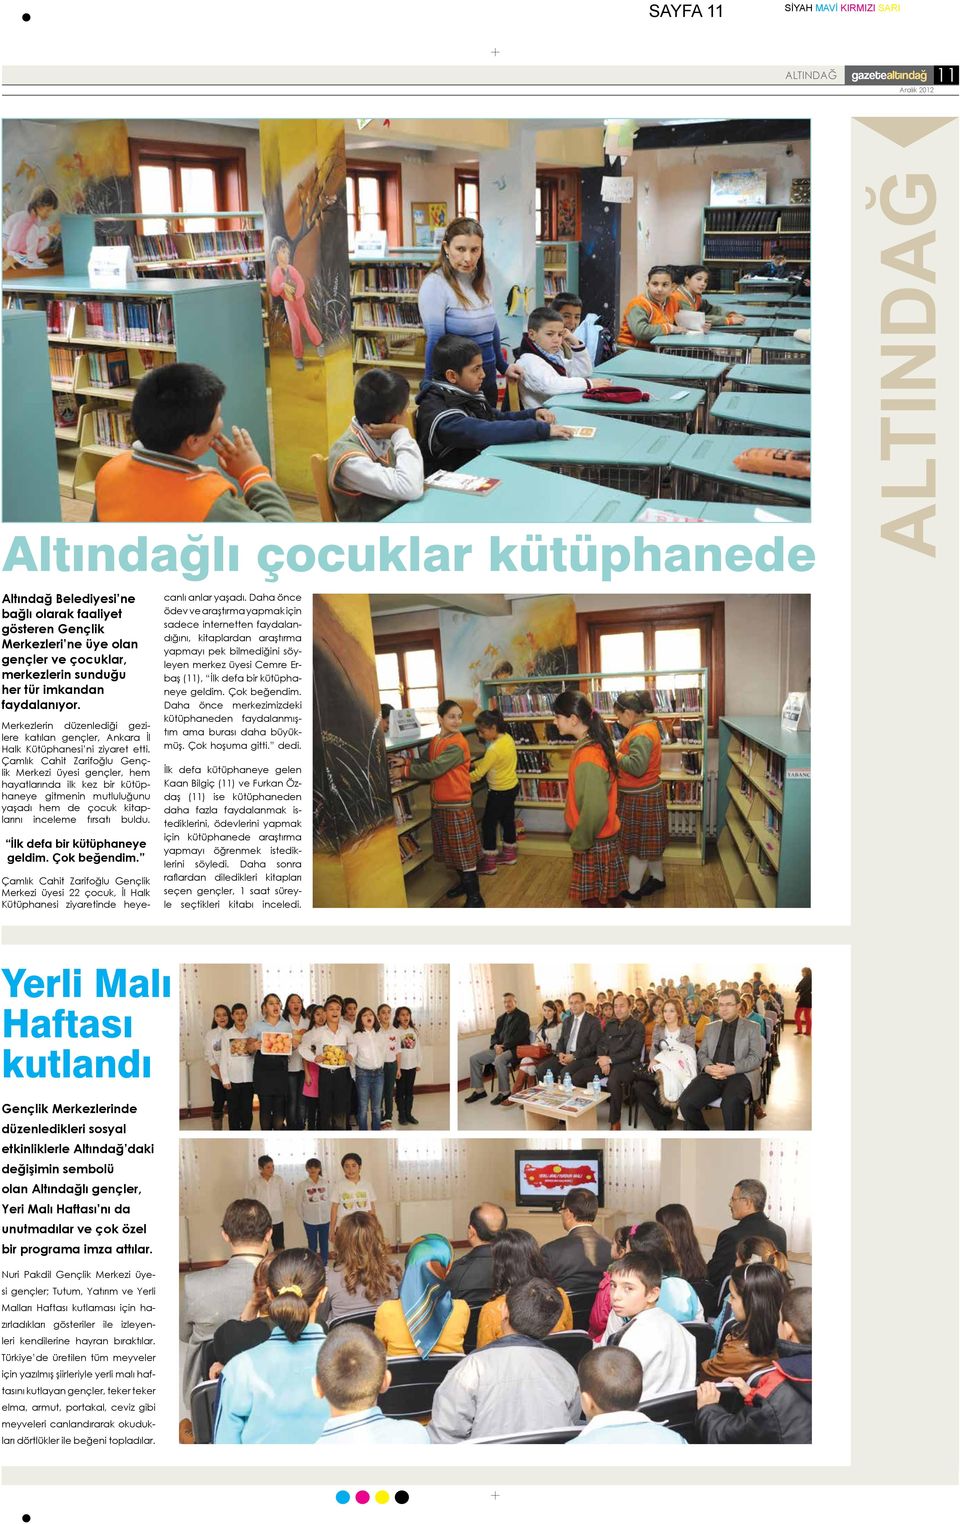 Çamlık Cahit Zarifoğlu Gençlik Merkezi üyesi gençler, hem hayatlarında ilk kez bir kütüphaneye gitmenin mutluluğunu yaşadı hem de çocuk kitaplarını inceleme fırsatı buldu.